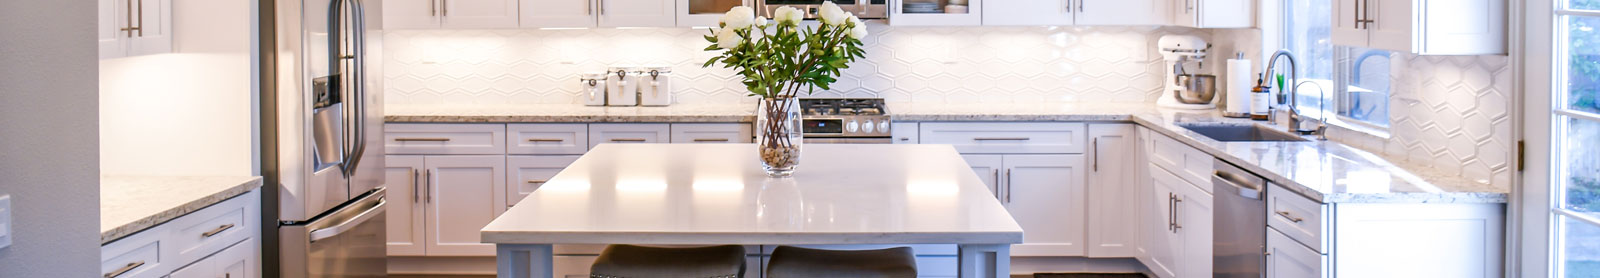 photo of newly renovated beautiful white kitchen